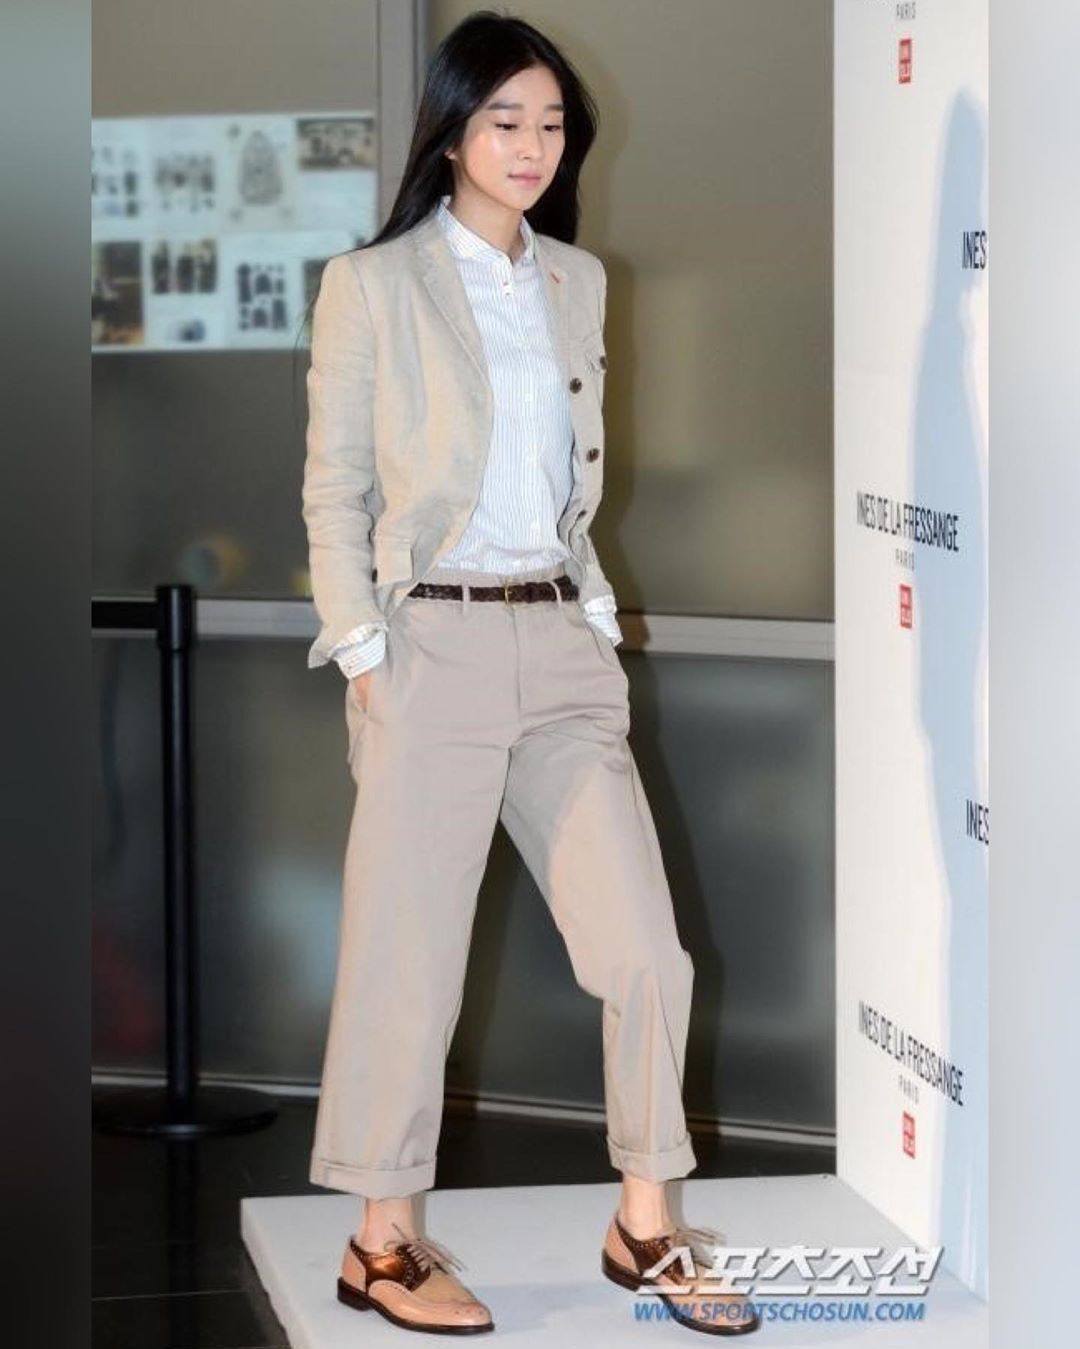 Chân dài nổi tiếng nhưng Seo Ye Ji cũng từng dìm dáng thảm hại vì chọn nhầm bộ suit khiến chân ngắn một mẩu - Ảnh 2.